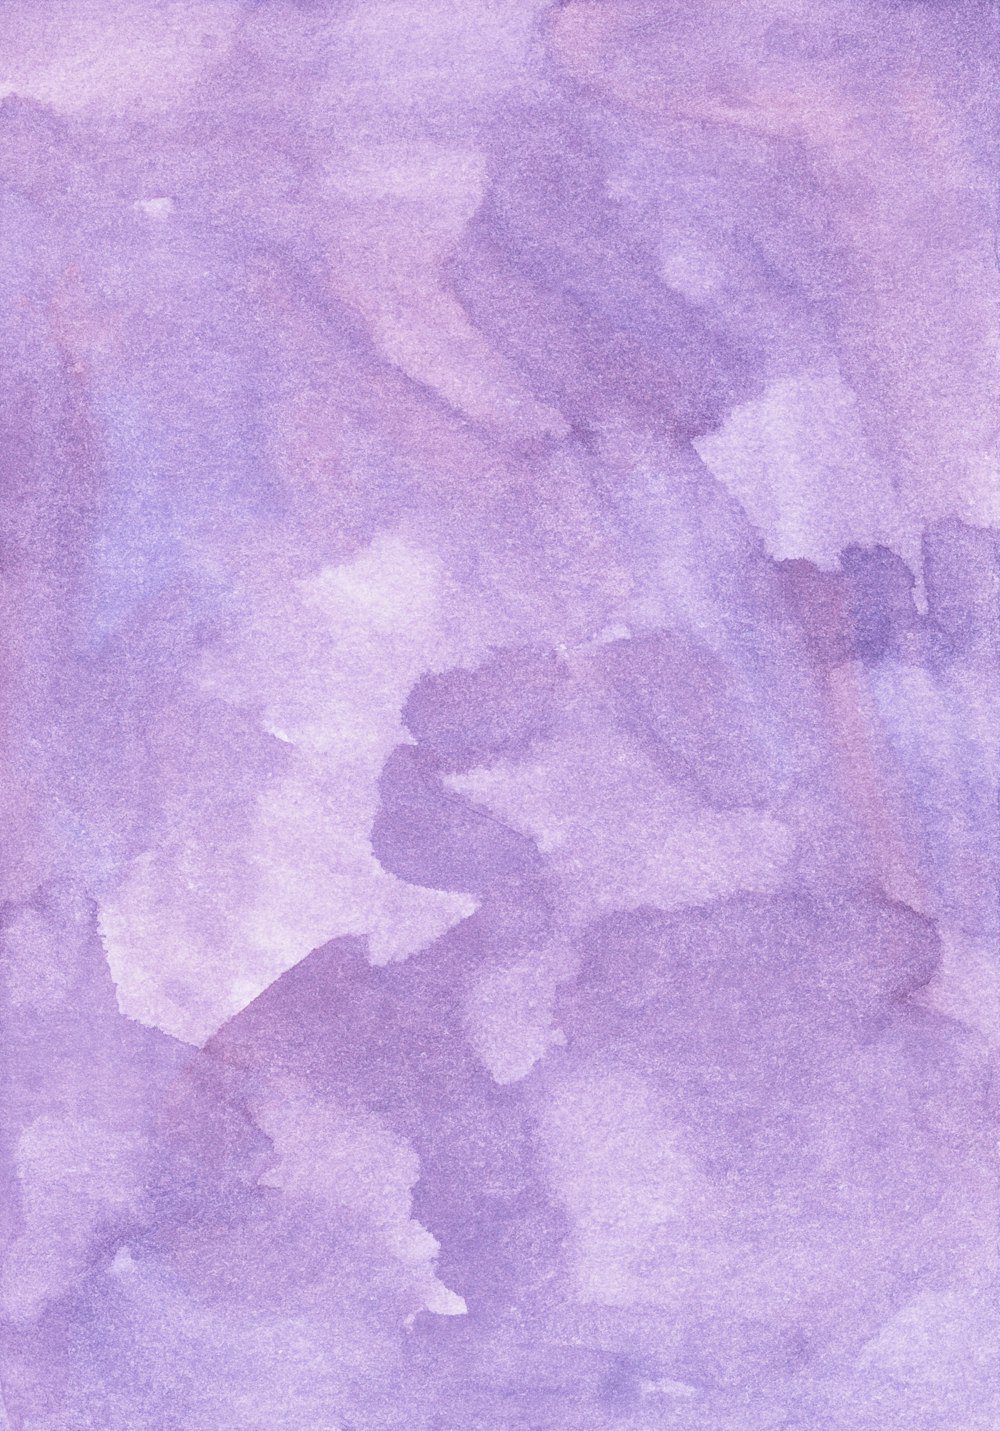 une aquarelle d’un fond violet